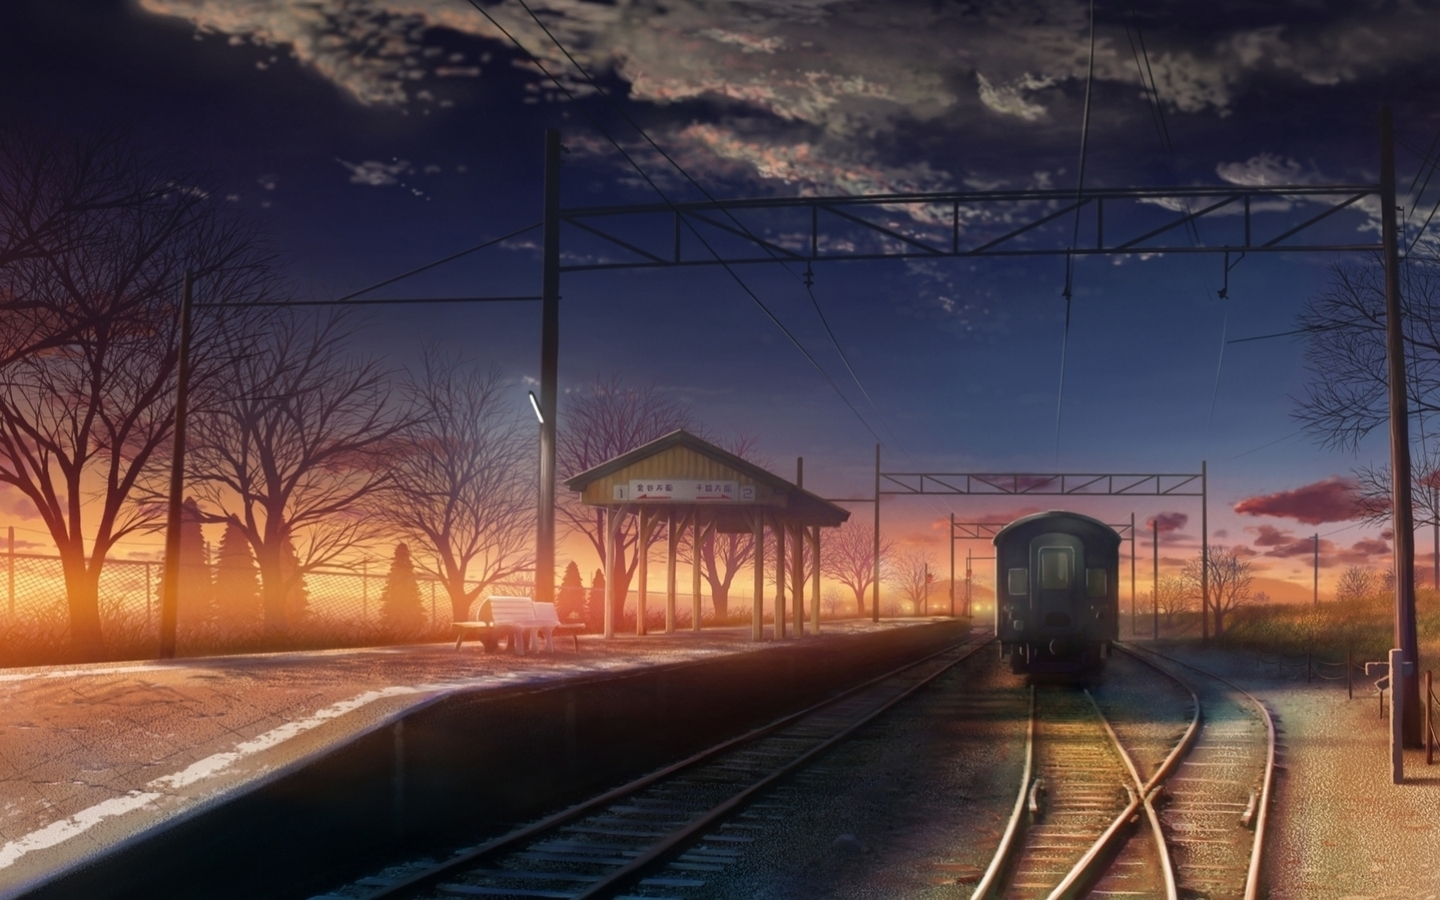 trains, landscape images